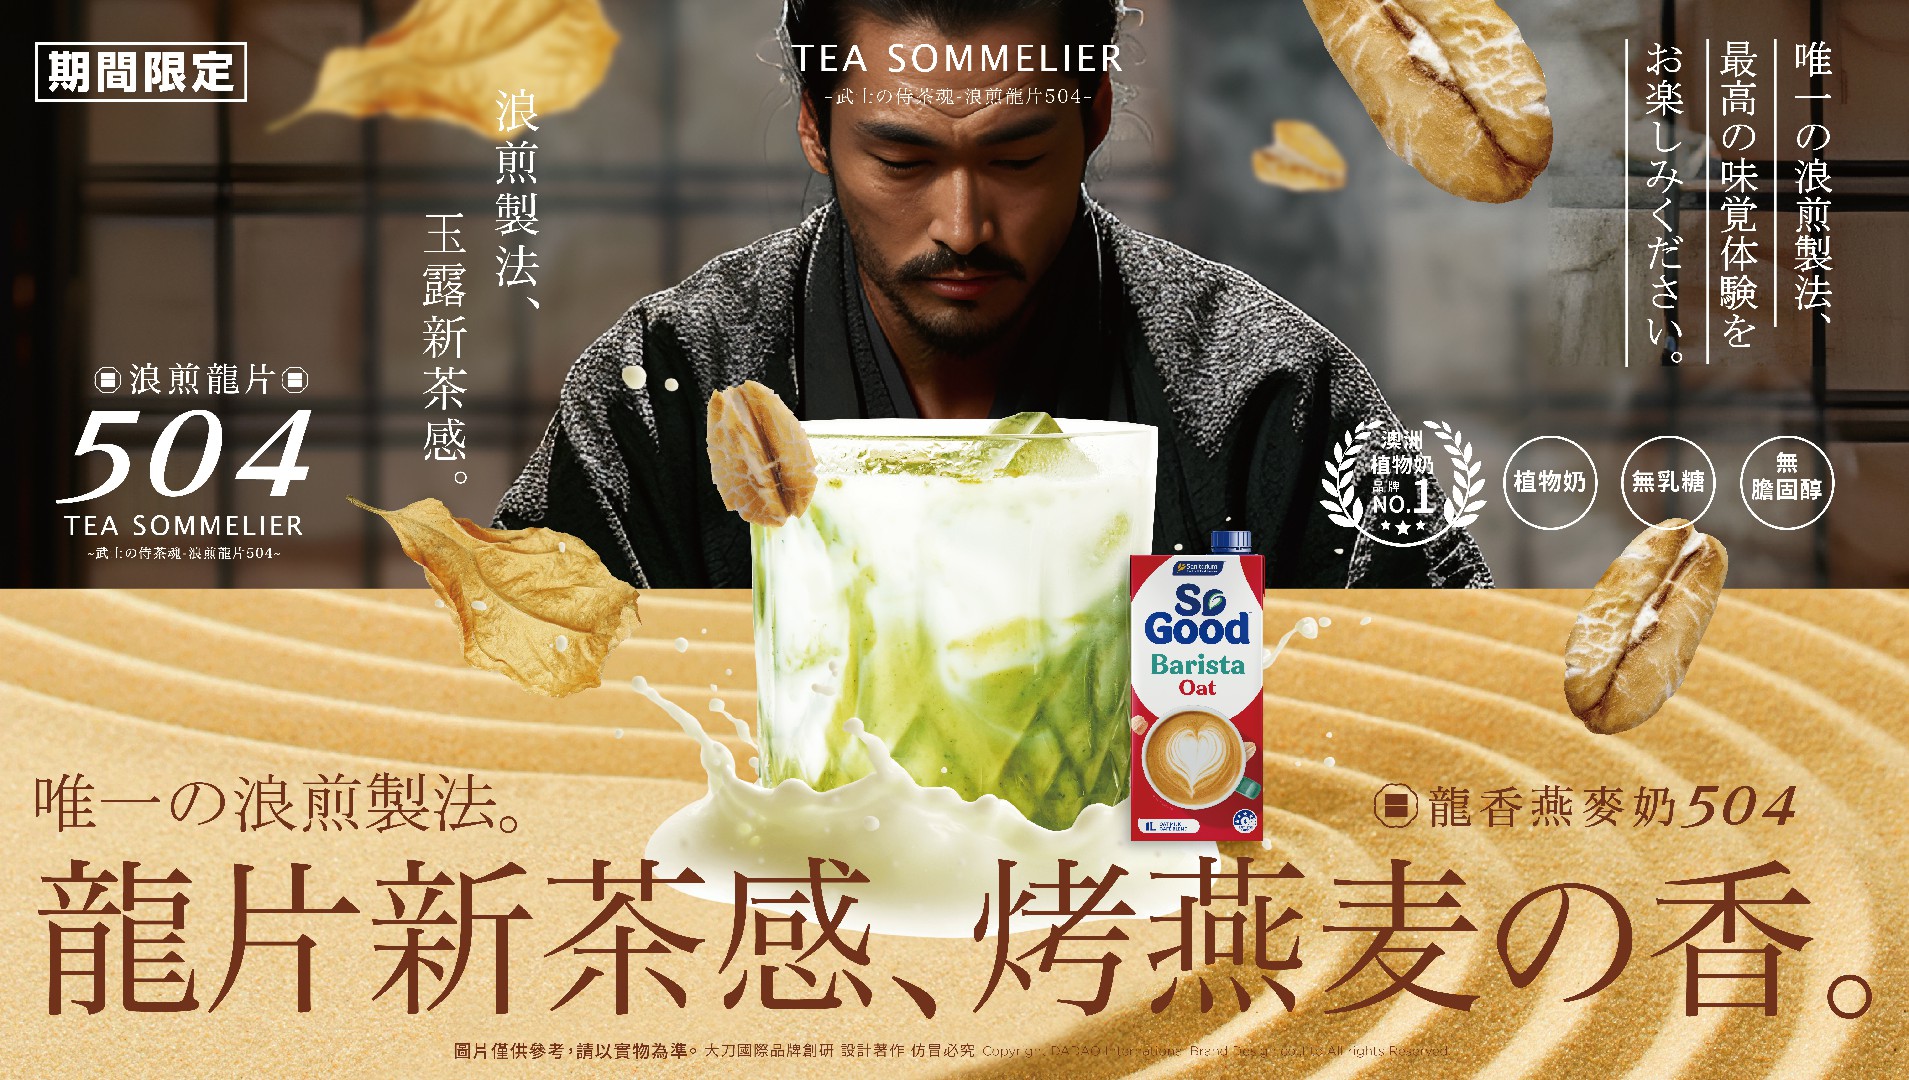 以獨特創新茶風味「浪煎龍片504」取代綠茶。